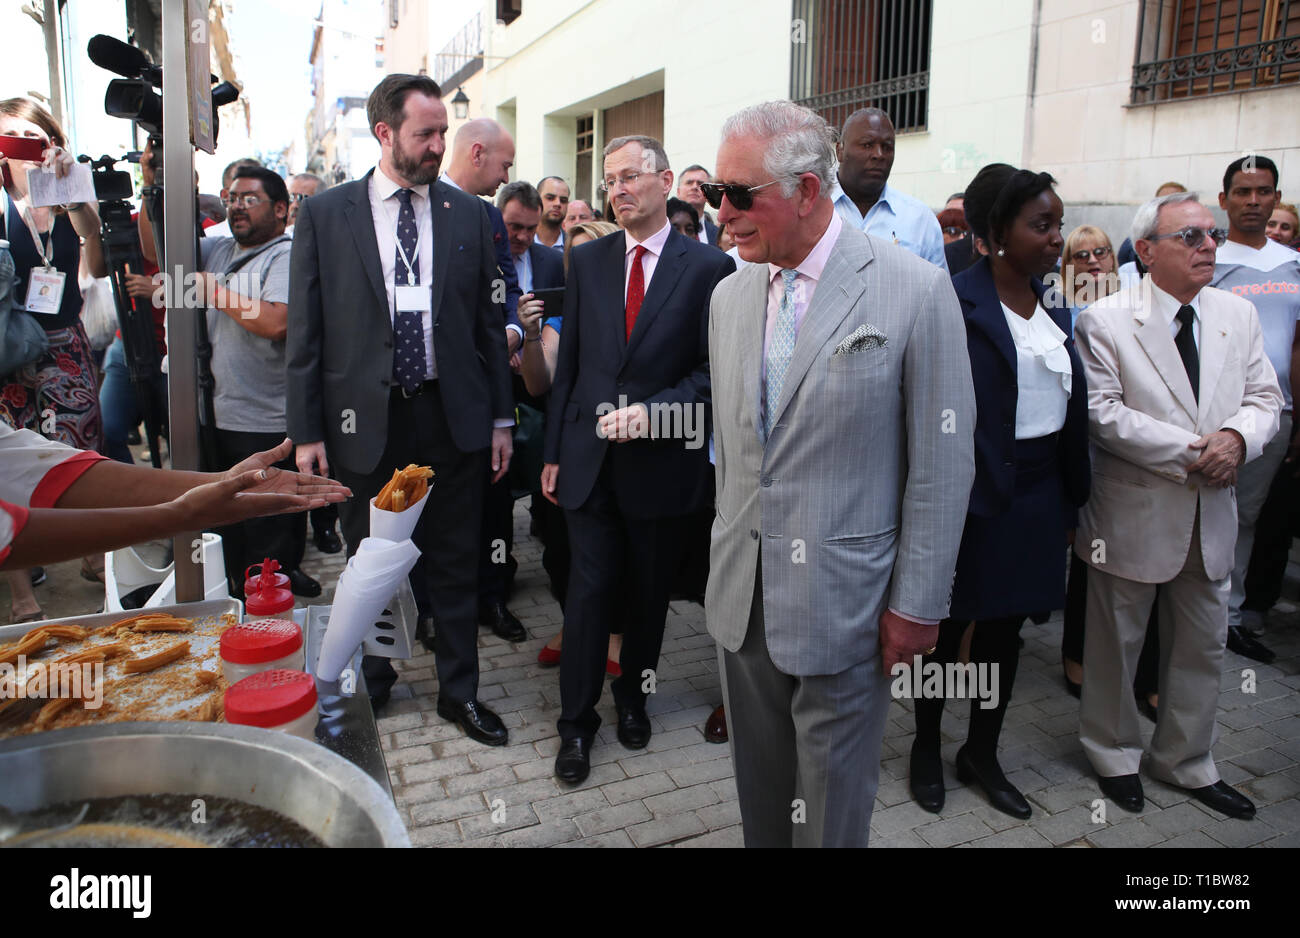 Der Prinz von Wales und die Herzogin von Cornwall eine Tour durch die Altstadt von Havanna, Kuba, während eine historische Reise, die feiert die kulturellen Bindungen zwischen dem Vereinigten Königreich und den kommunistischen Staat. Stockfoto